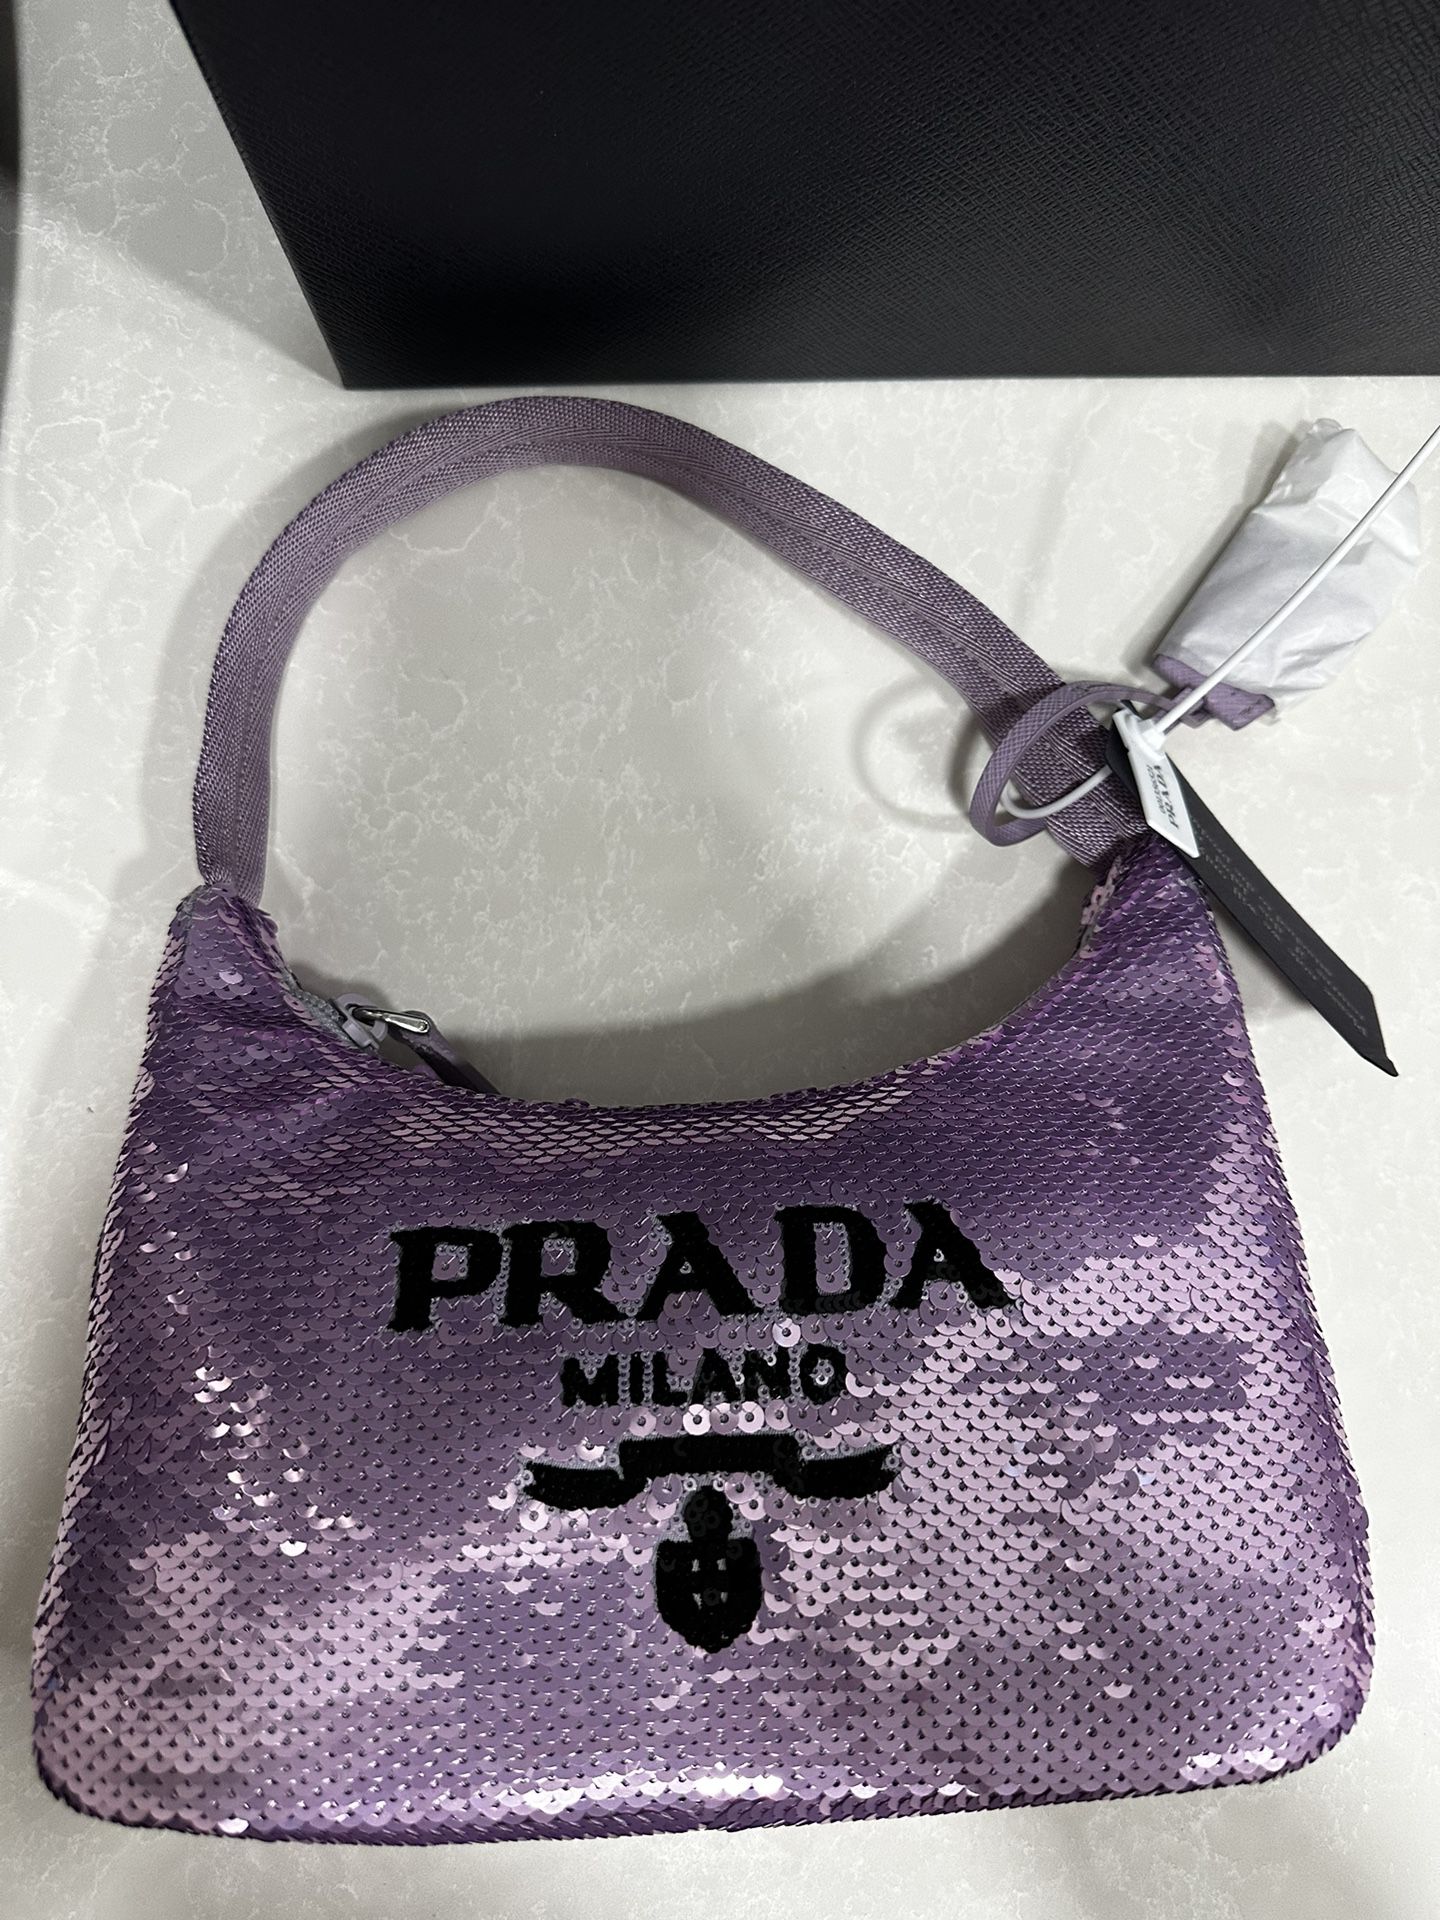 Prada promenade Bag for Sale in Henderson, NV - OfferUp